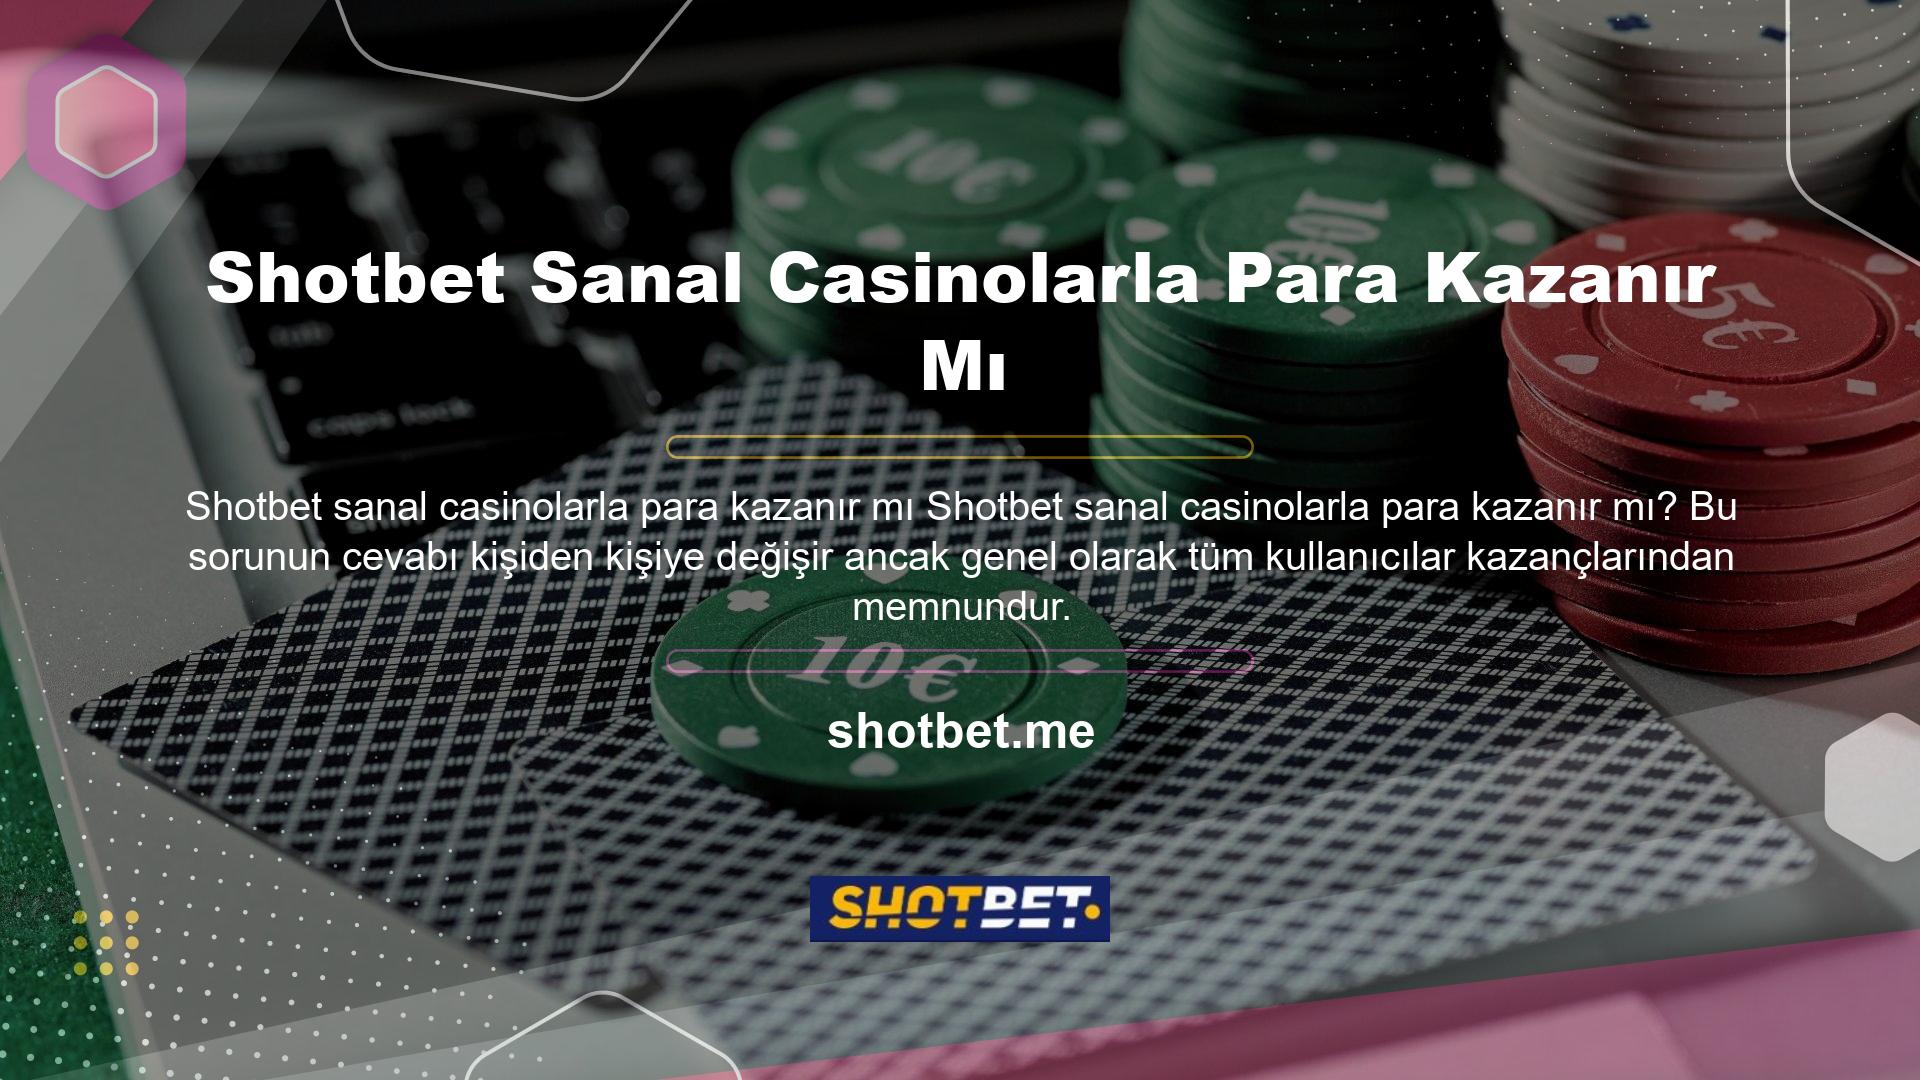 Shotbet sanal casino sitesinde para kazanmanın birçok yolu vardır